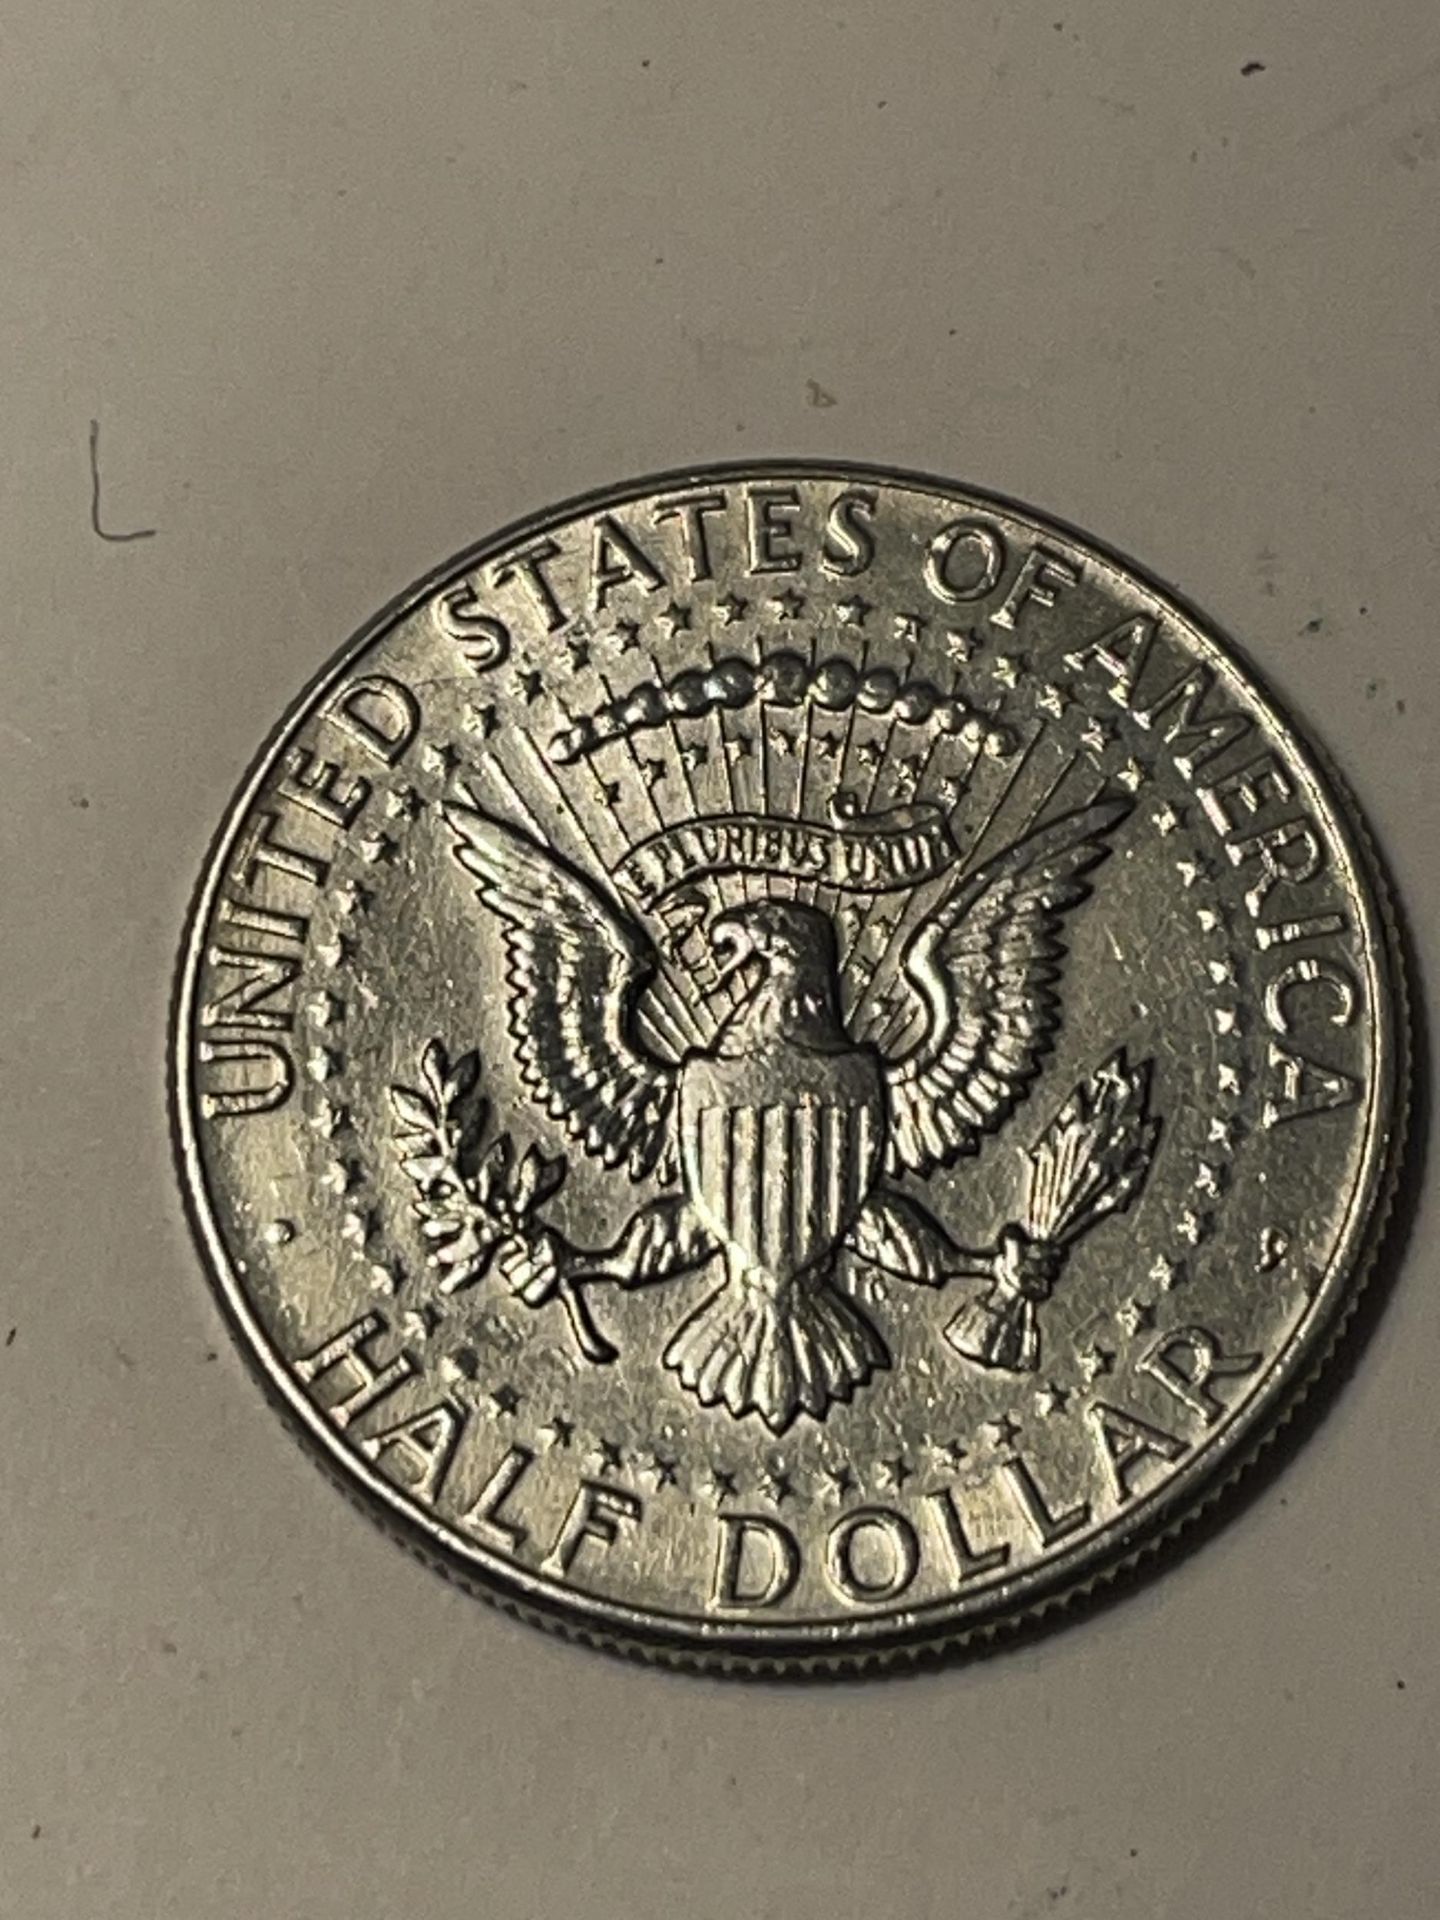 A SILVER 1964 AMERICAN HALF DOLLAR